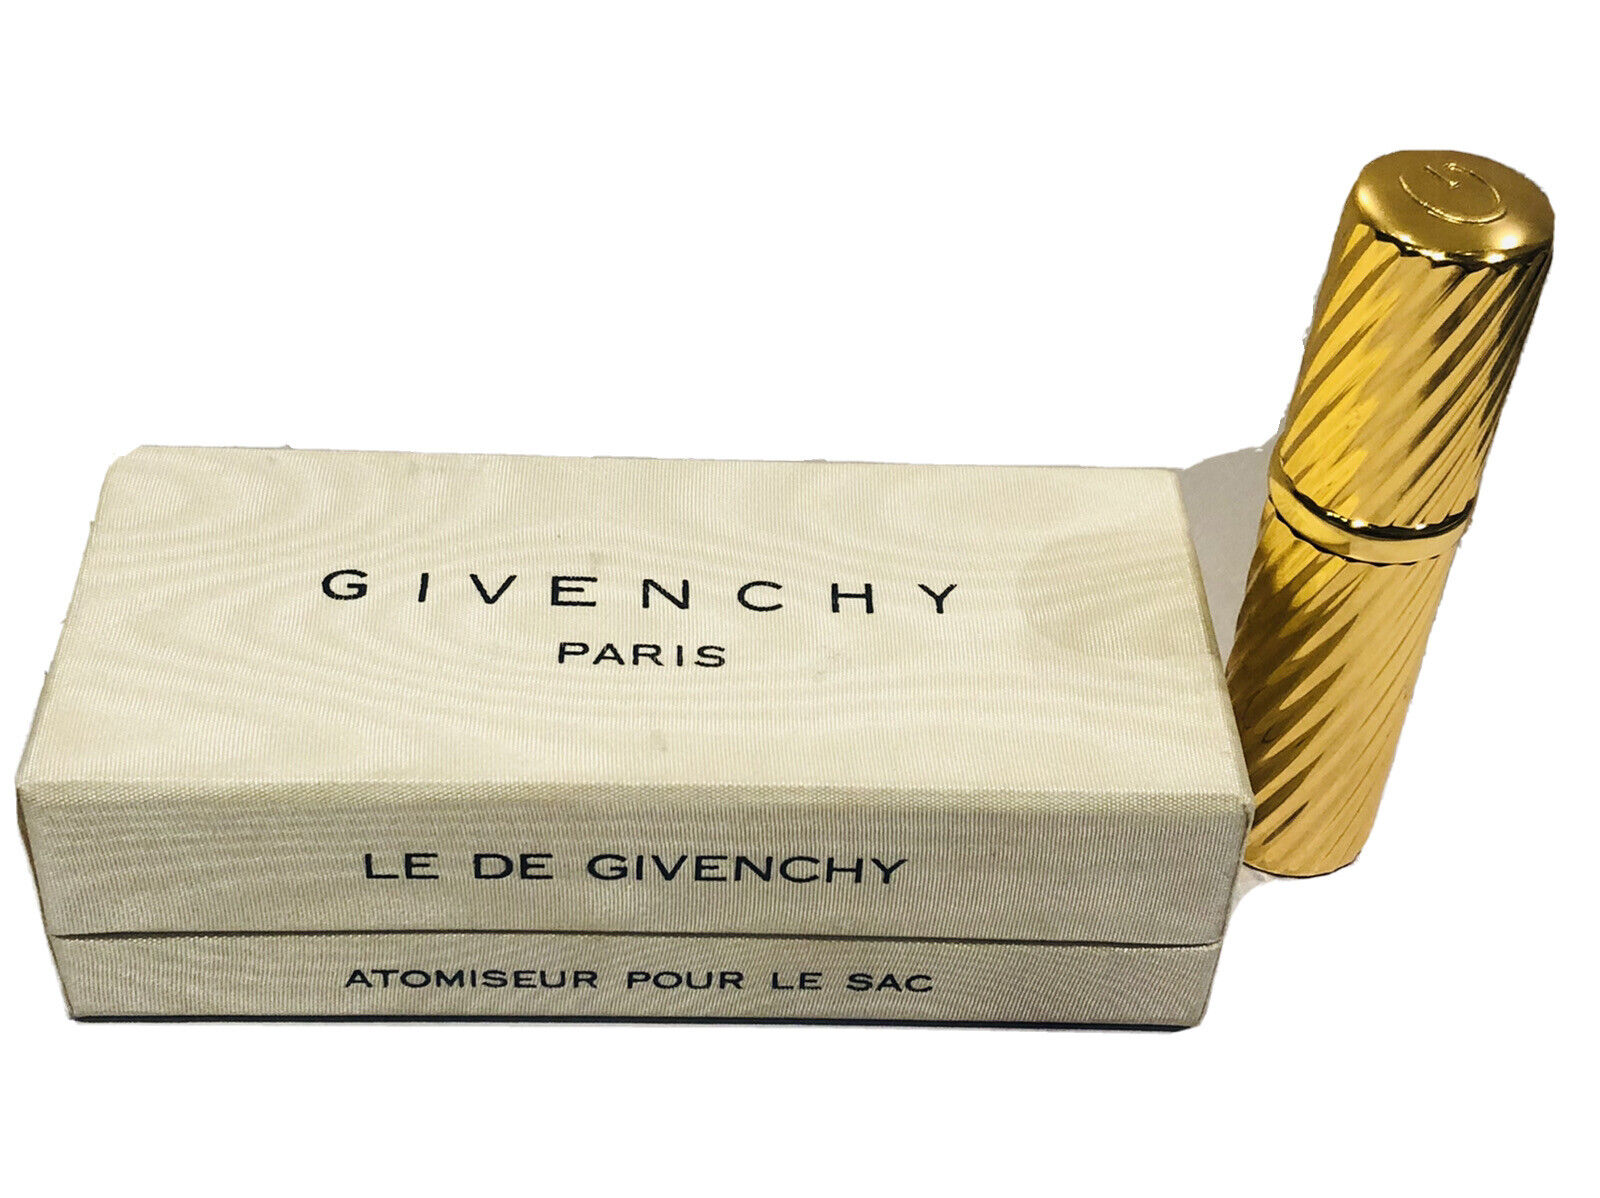 Givenchy Paris Le de Givenchy Atomiseur Pour le Sac Perfume Atomizer 1/4oz